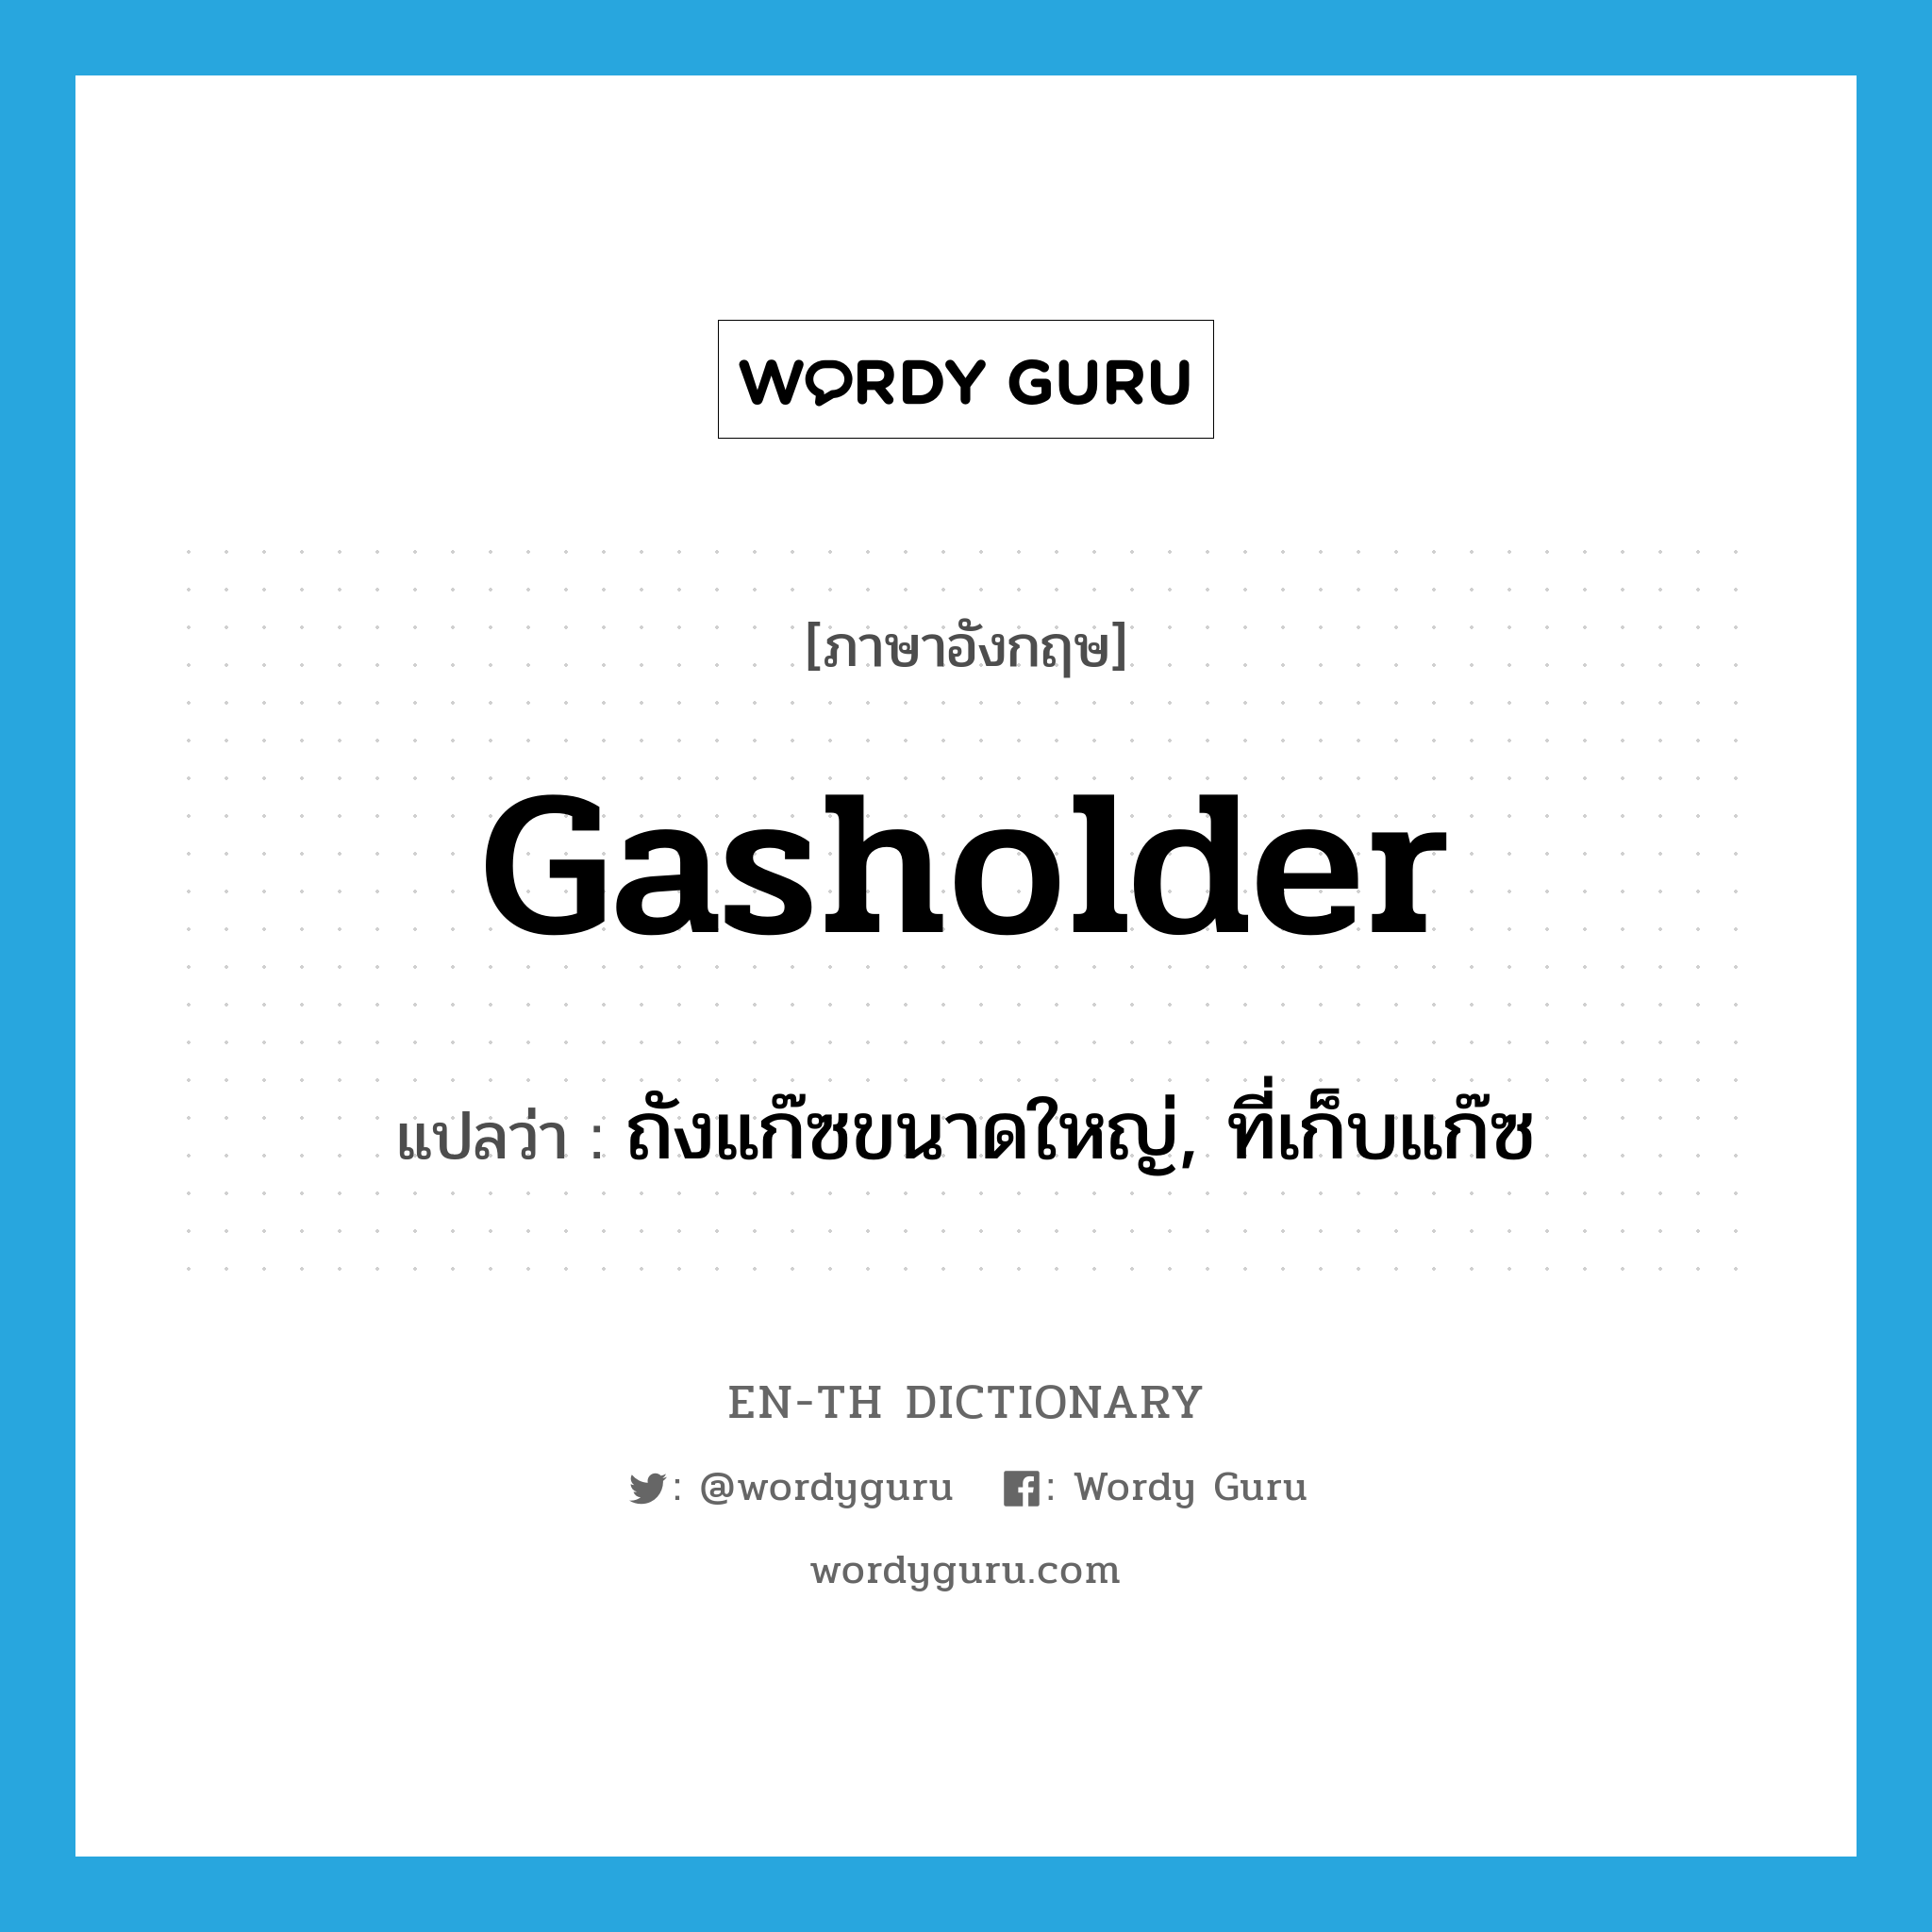 ถังแก๊ซขนาดใหญ่, ที่เก็บแก๊ซ ภาษาอังกฤษ?, คำศัพท์ภาษาอังกฤษ ถังแก๊ซขนาดใหญ่, ที่เก็บแก๊ซ แปลว่า gasholder ประเภท N หมวด N